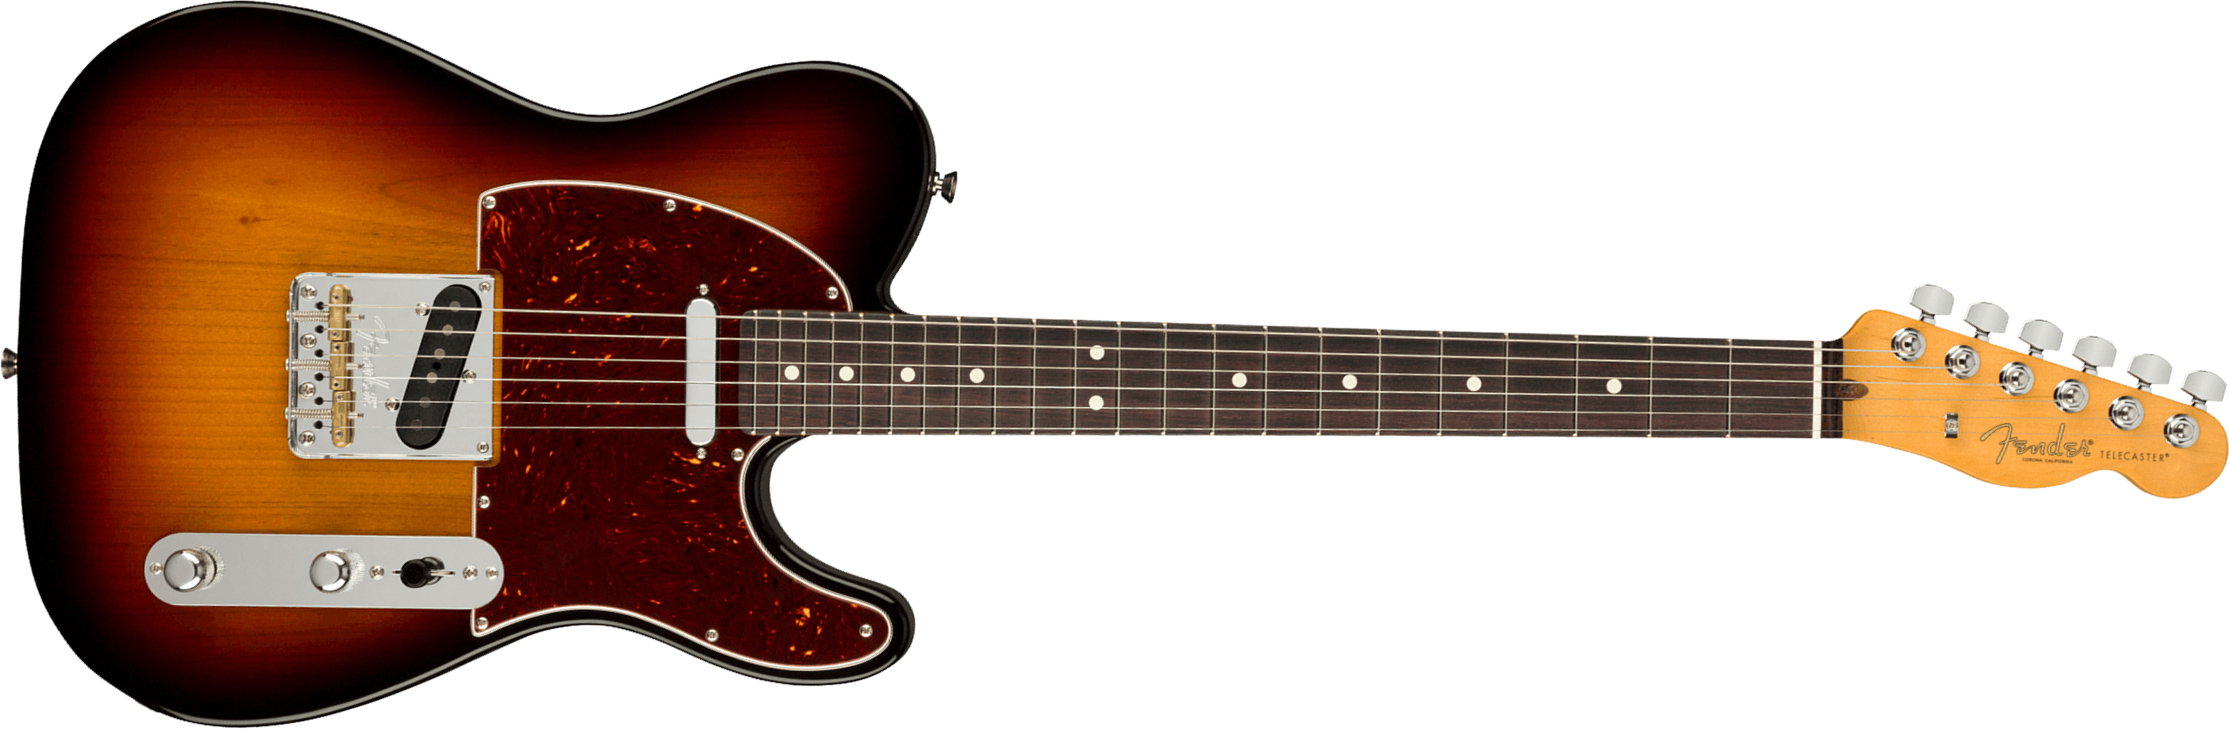 Fender Tele American Professional Ii Usa Rw - 3-color Sunburst - Guitare Électrique Forme Tel - Main picture